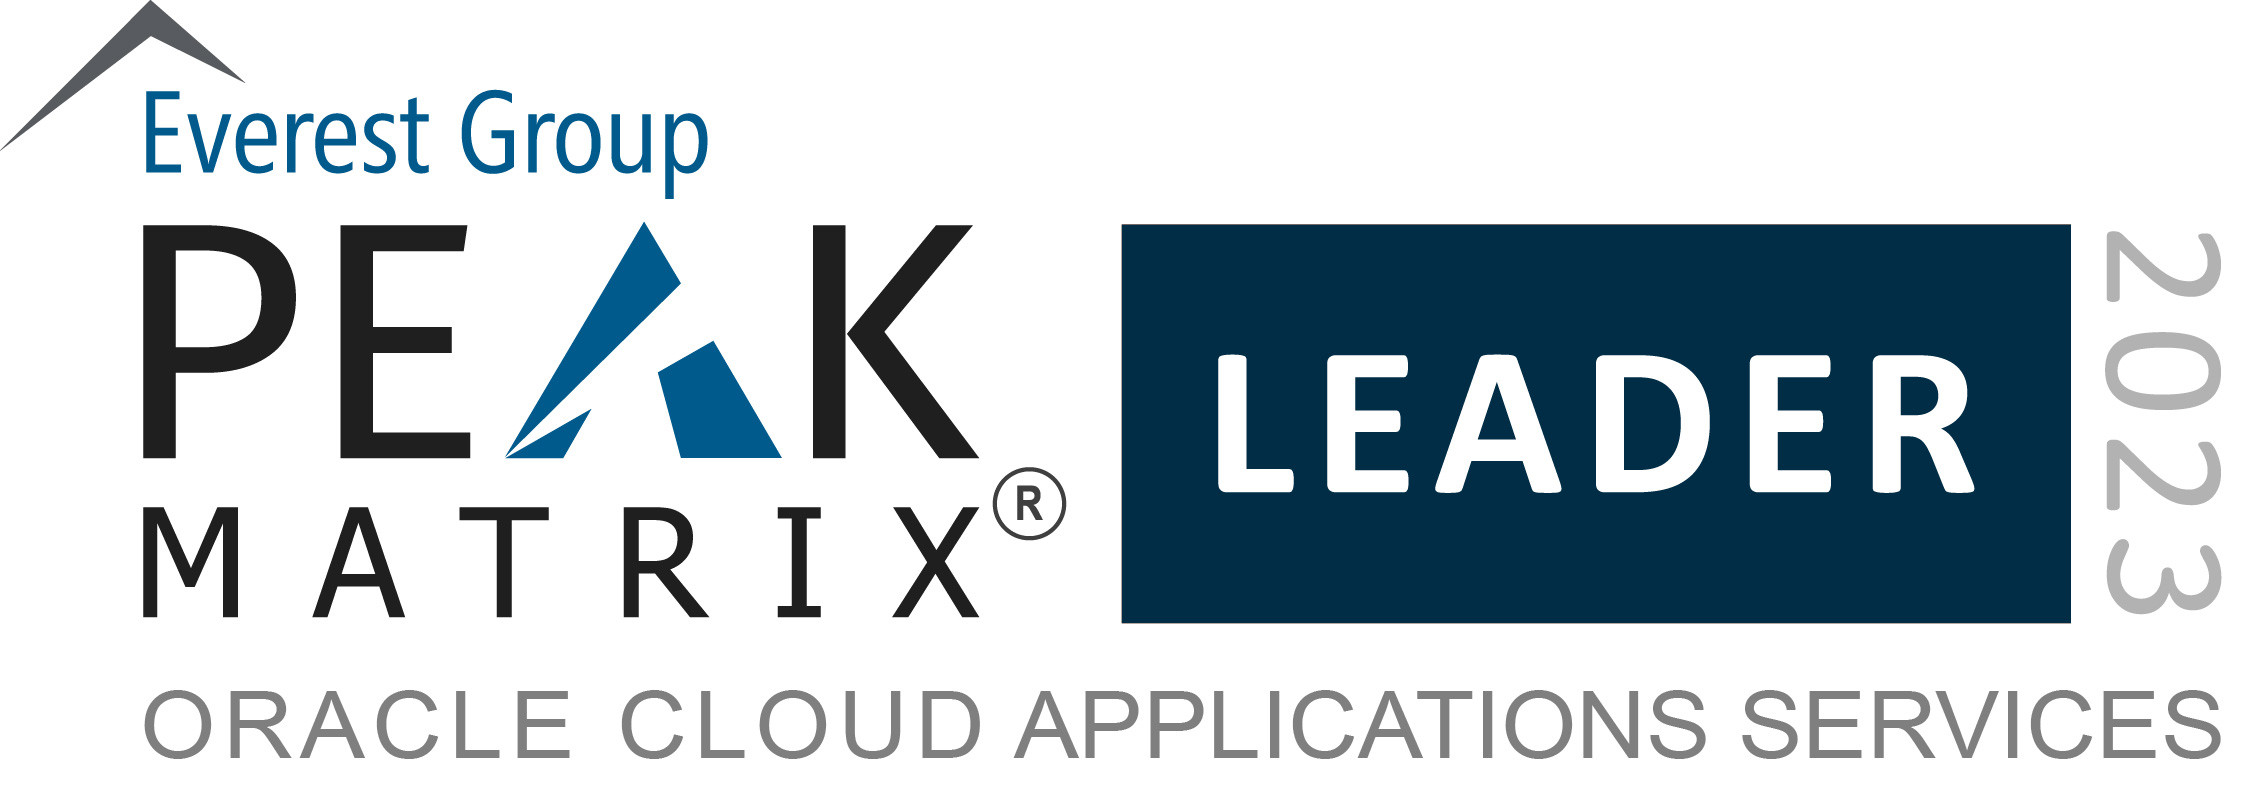 PEAK Matrix Oracle cloud application services image